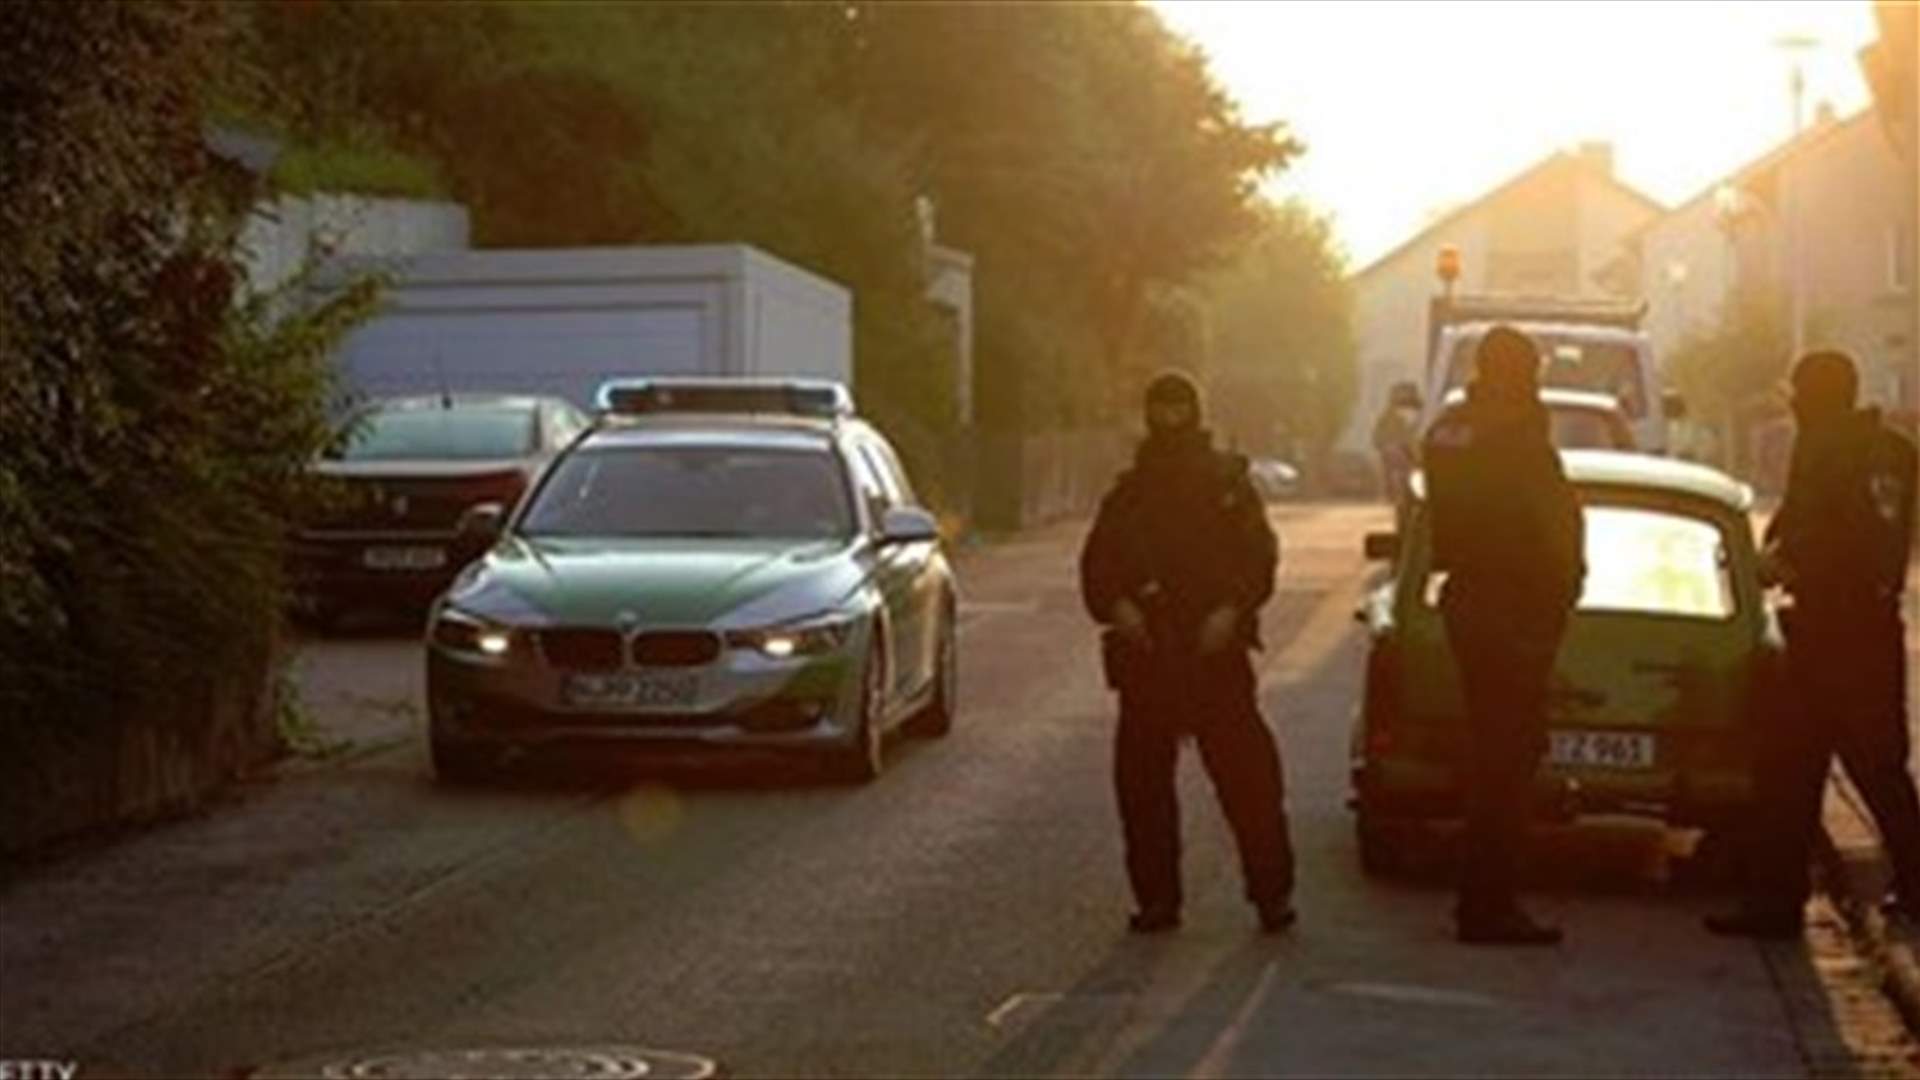 Man shoots dead doctor, kills himself at Berlin hospital